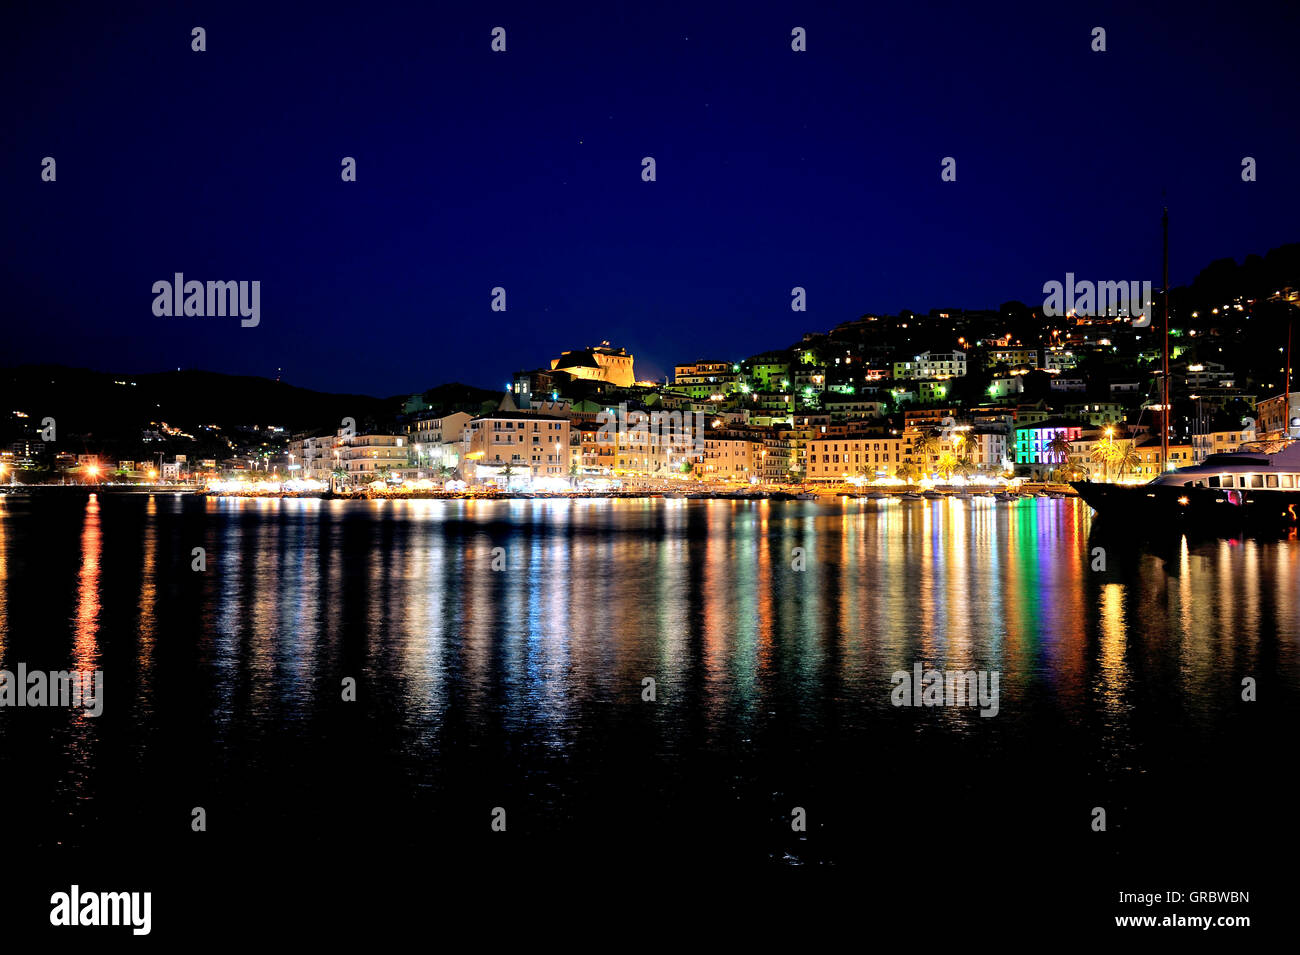 Photo de nuit Panorama, éclairage coloré dans la nuit dans le port de la ville Porto Santo Stefano, côte Toscane, Italie Banque D'Images